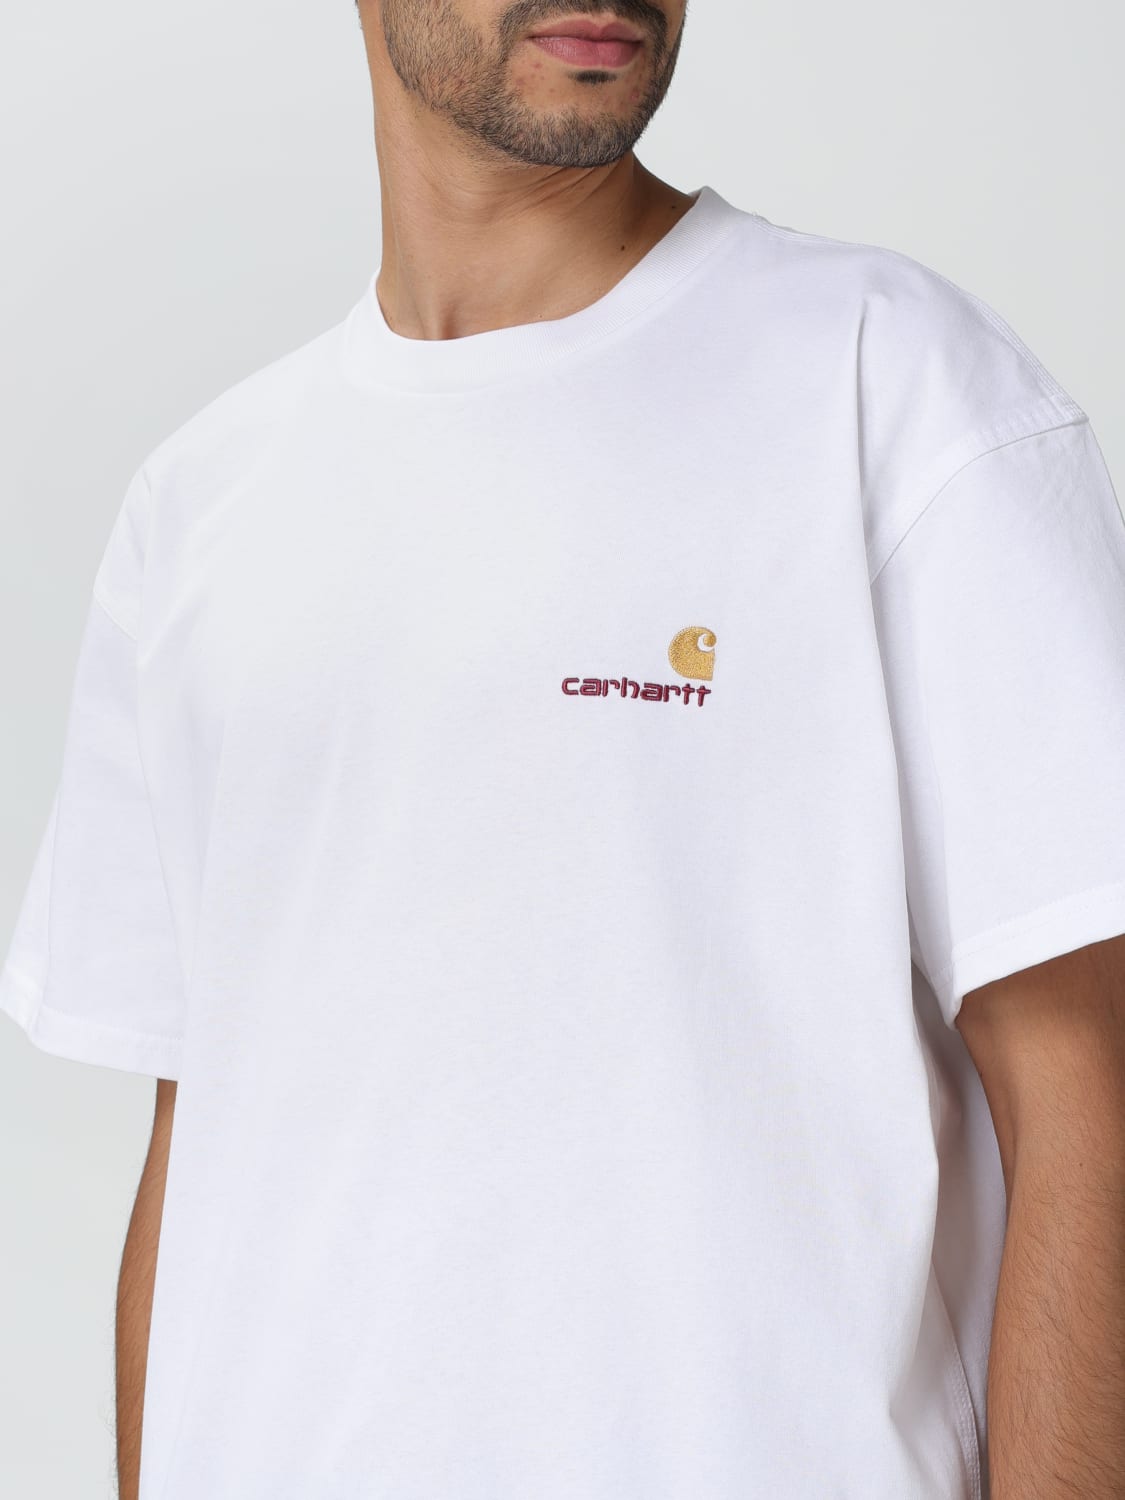 T-shirt homme imprimé CARHARTT 104363 - Déstockage